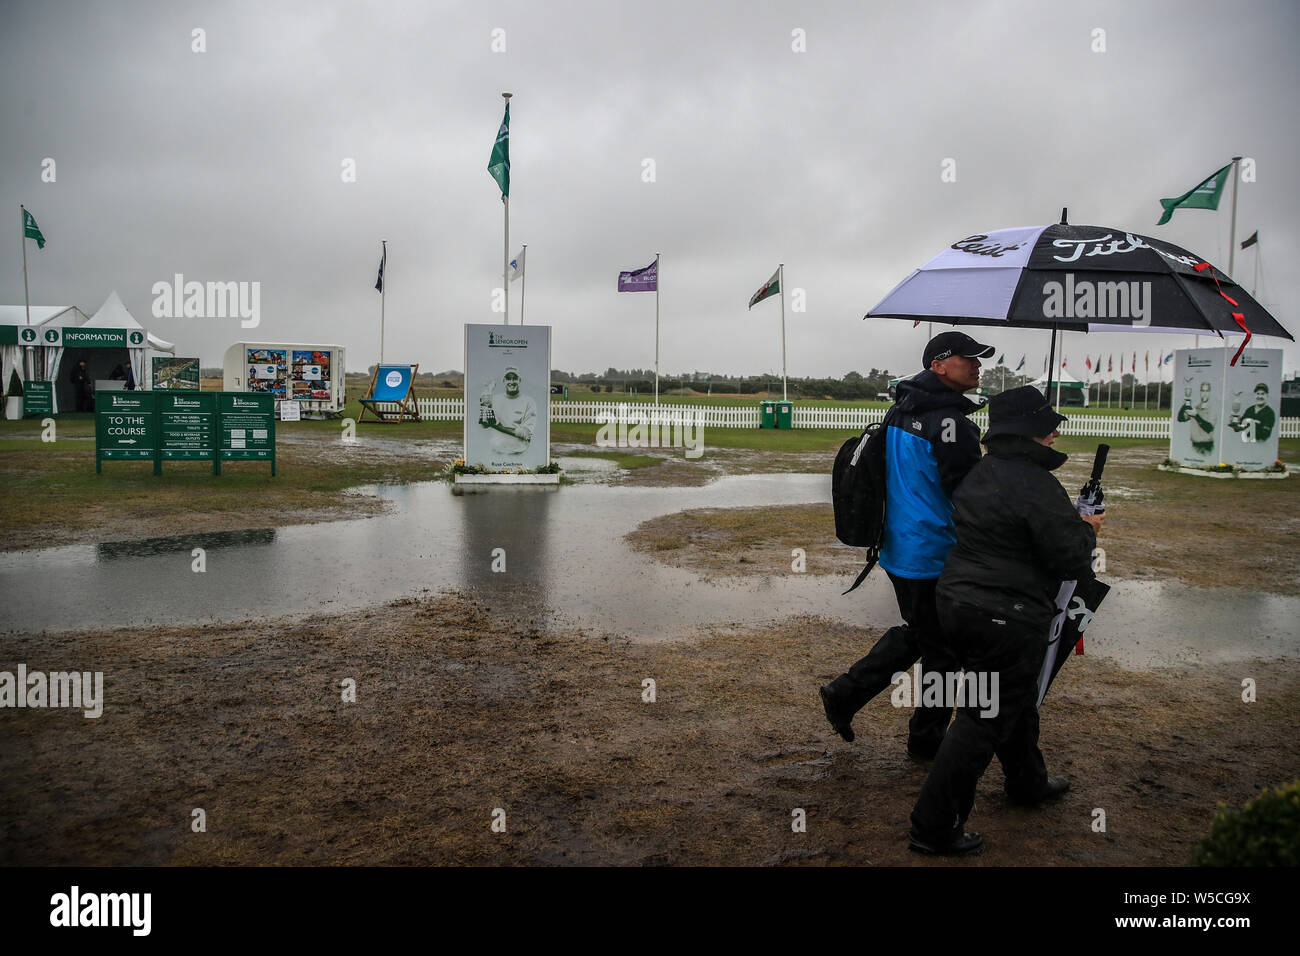 Eine Verzögerung bei der Anfang des Spiels aufgrund einer Regen durchnässt Royal Lytham Golfplatz am letzten Tag der Senior Open im Royal Lytham & St Annes Golf Club. Stockfoto